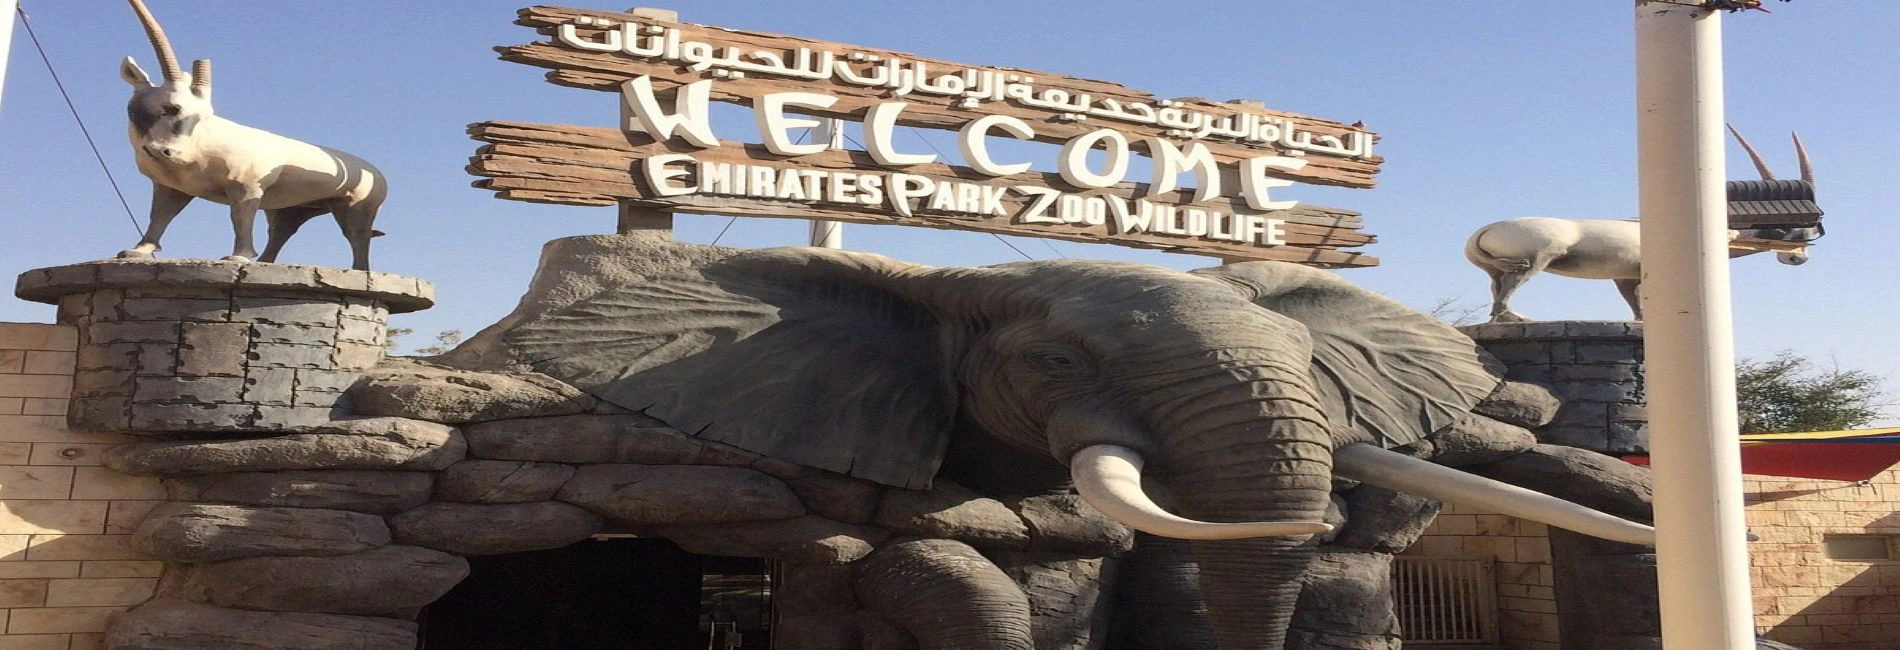 Emirates Park Zoo & Resort